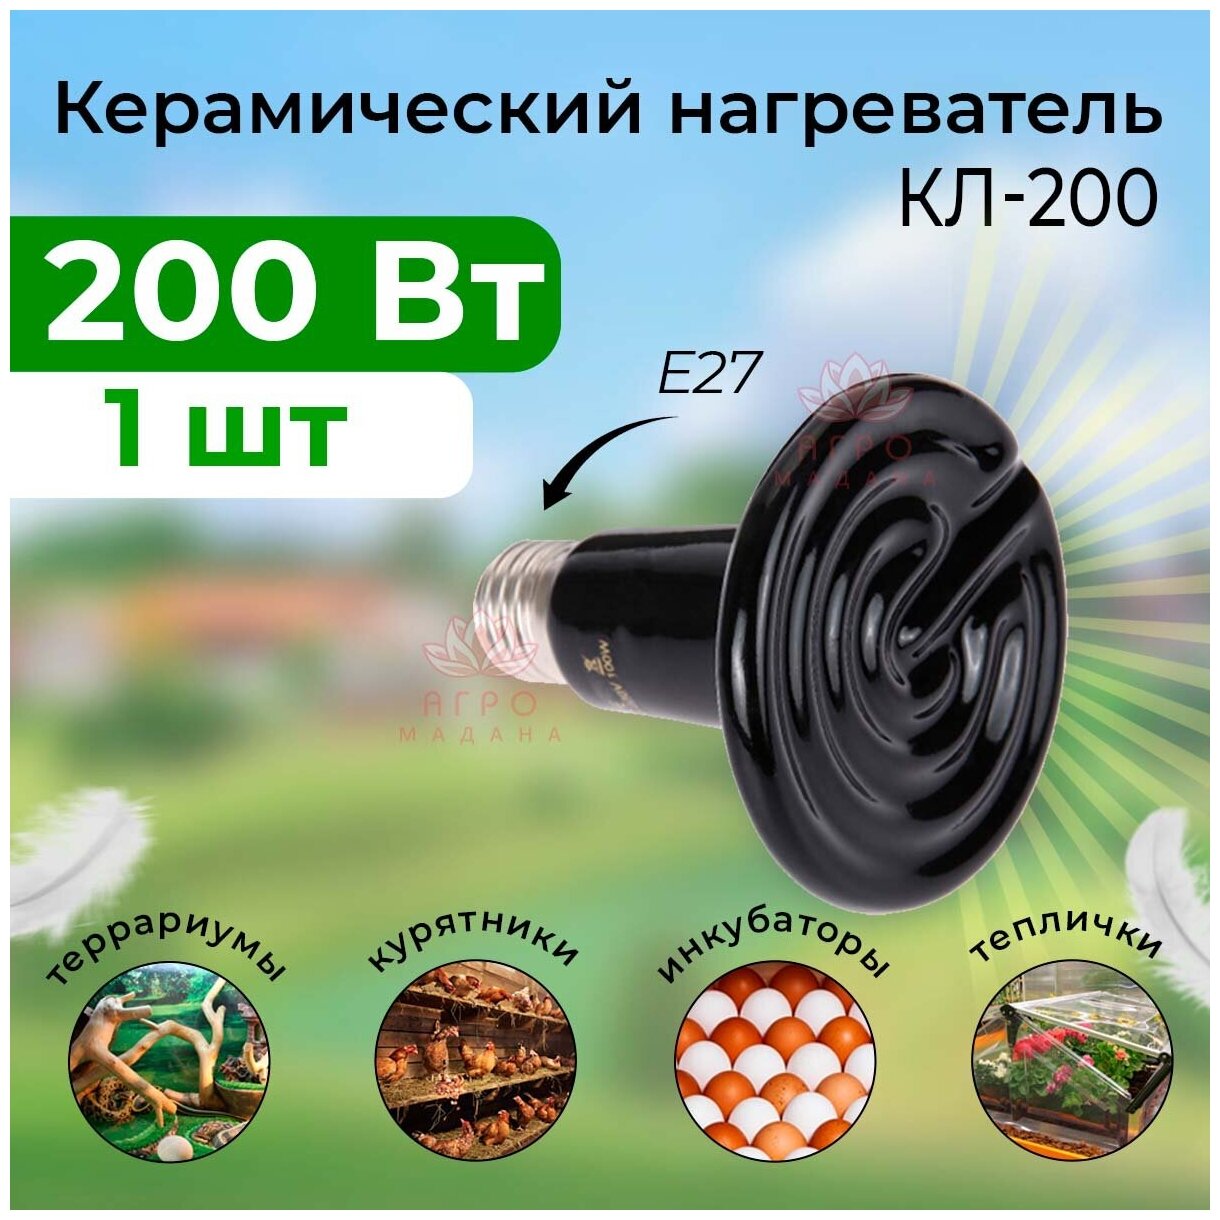 1шт Керамический нагреватель 200 Вт / Керамический нагреватель для брудера, курятника, инкубатора, птичника